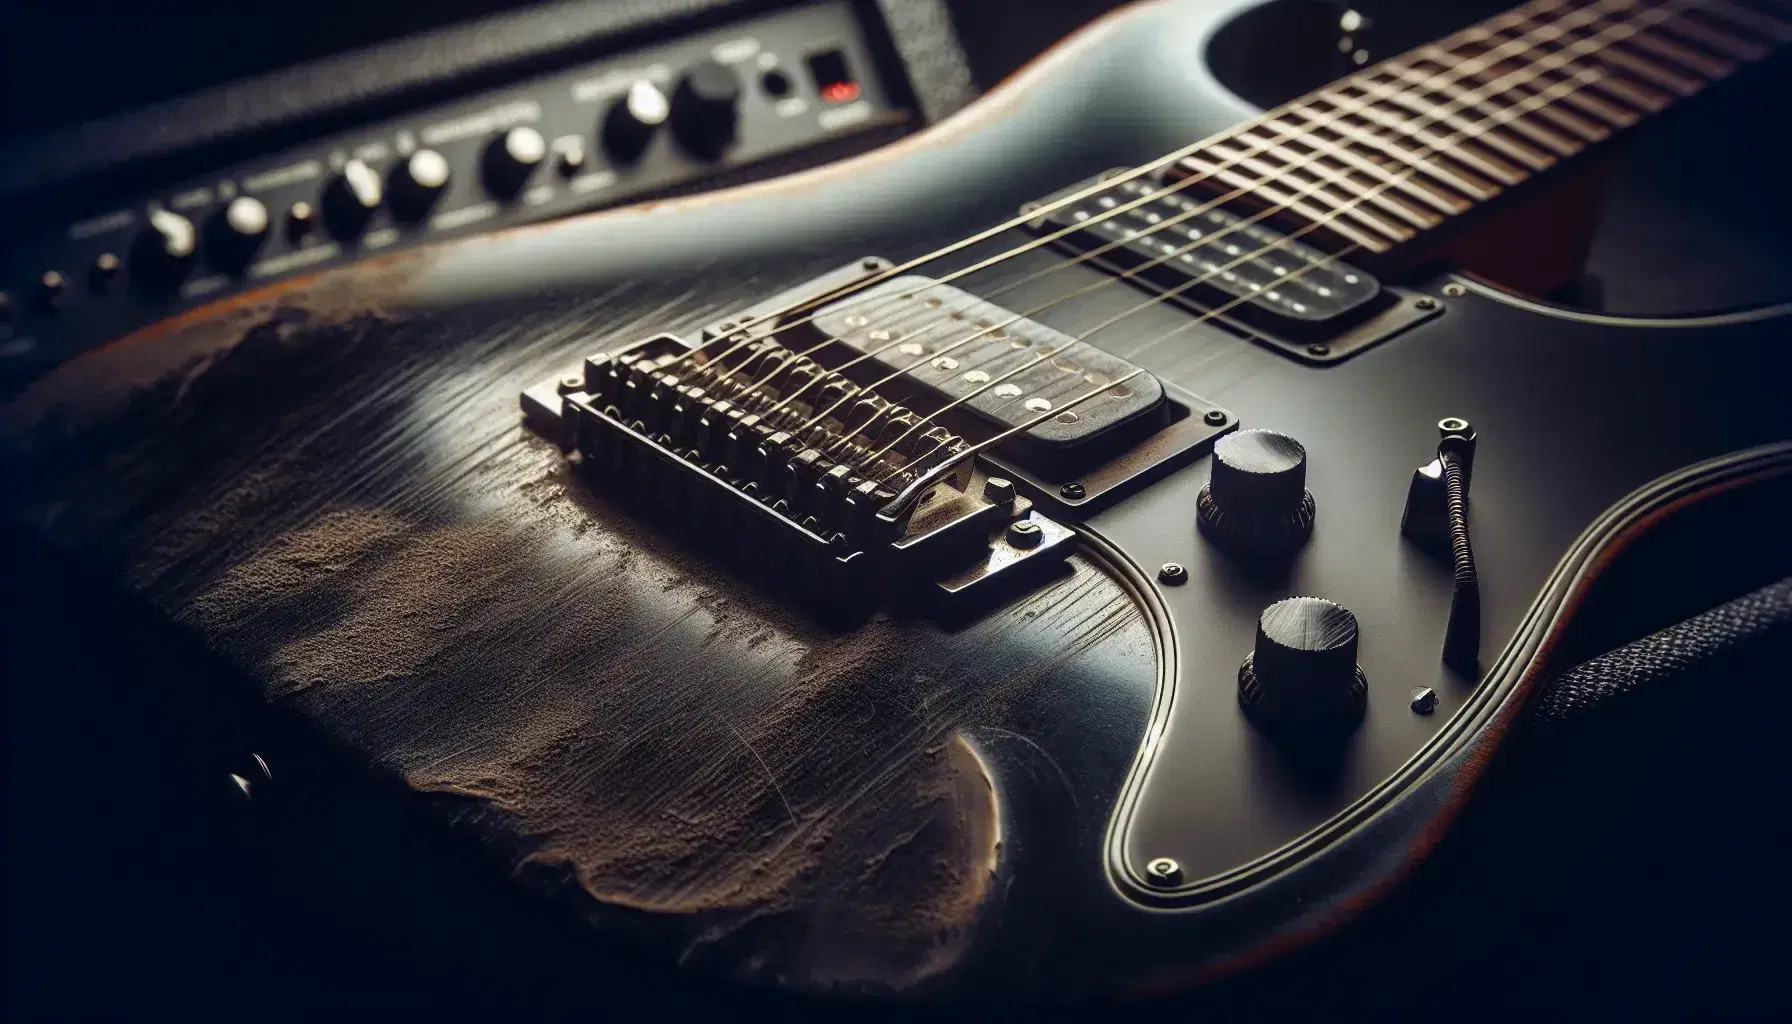 Guitarra eléctrica desgastada con cuerpo negro y cuerdas metálicas sobre fondo borroso de amplificador, reflejando uso intensivo y pasión musical.